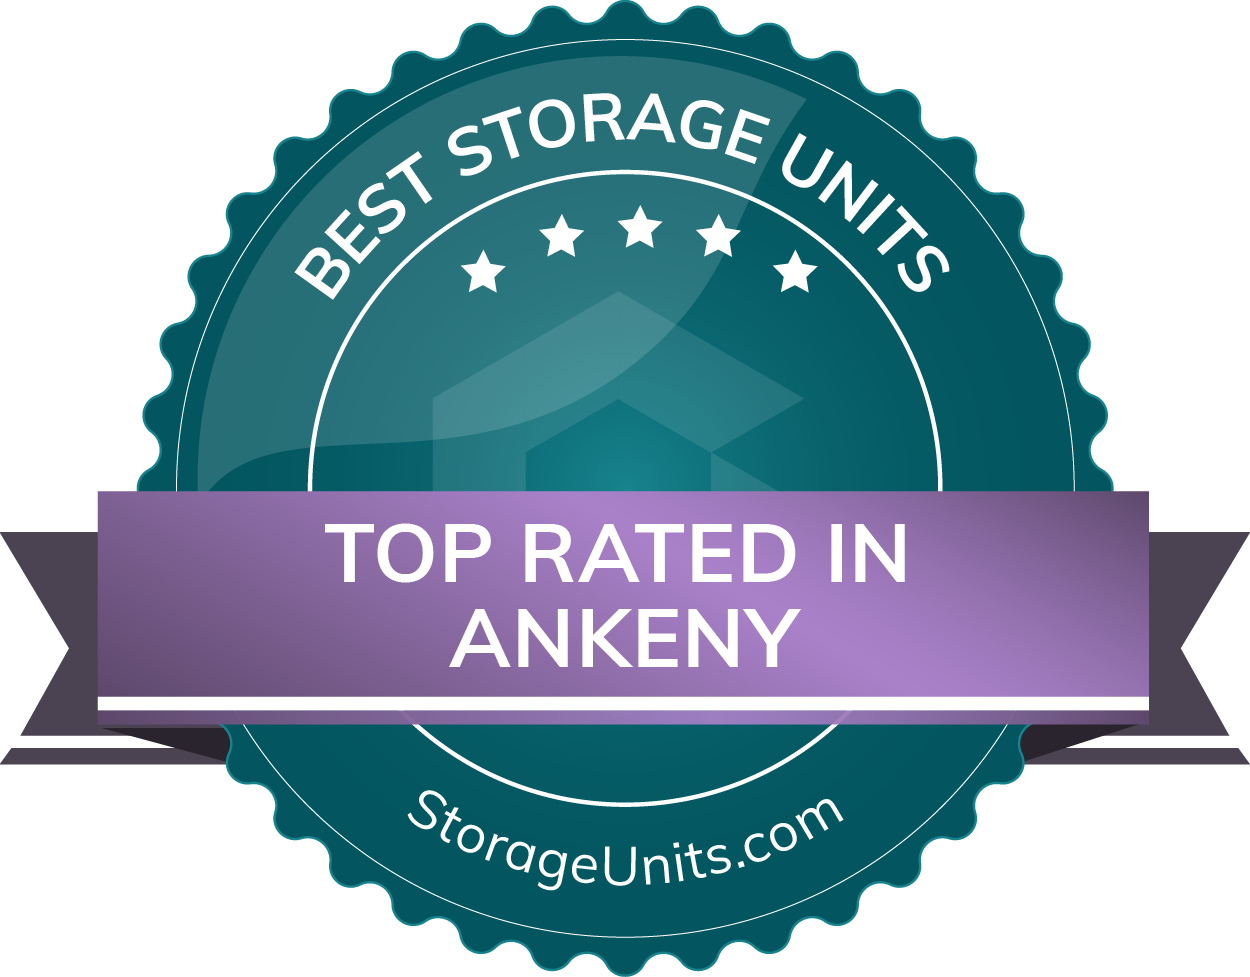 Best Self Storage Units in Ankeny, Iowa of 2022